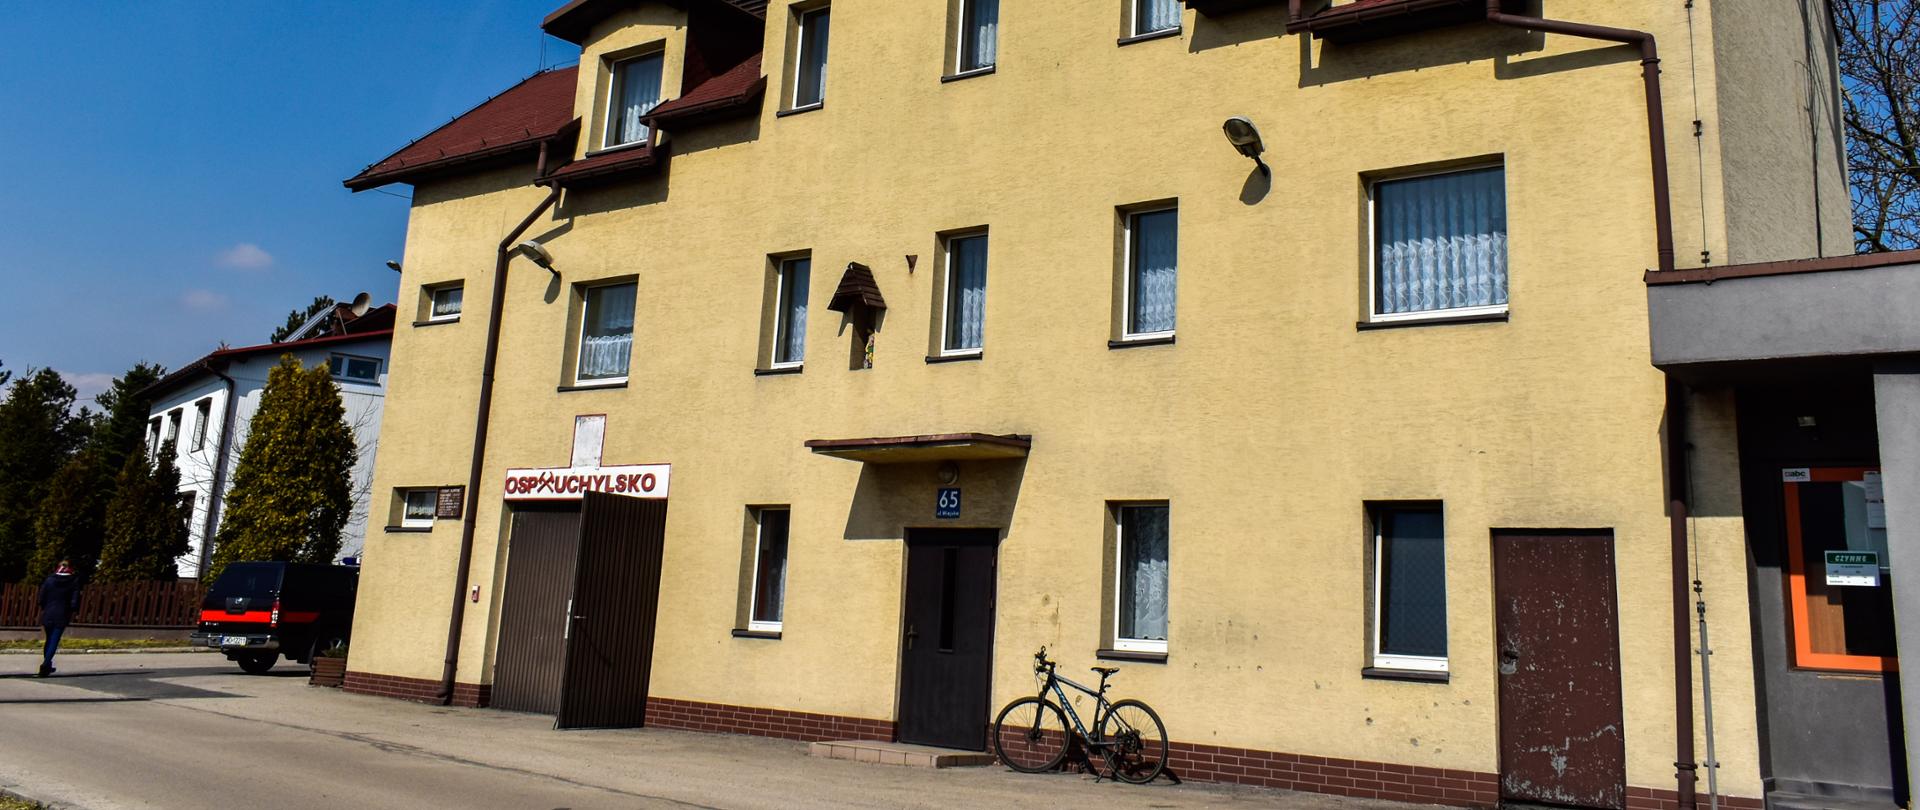 Zdjęcie prezentuje budynek jednostki OSP Uchylsko